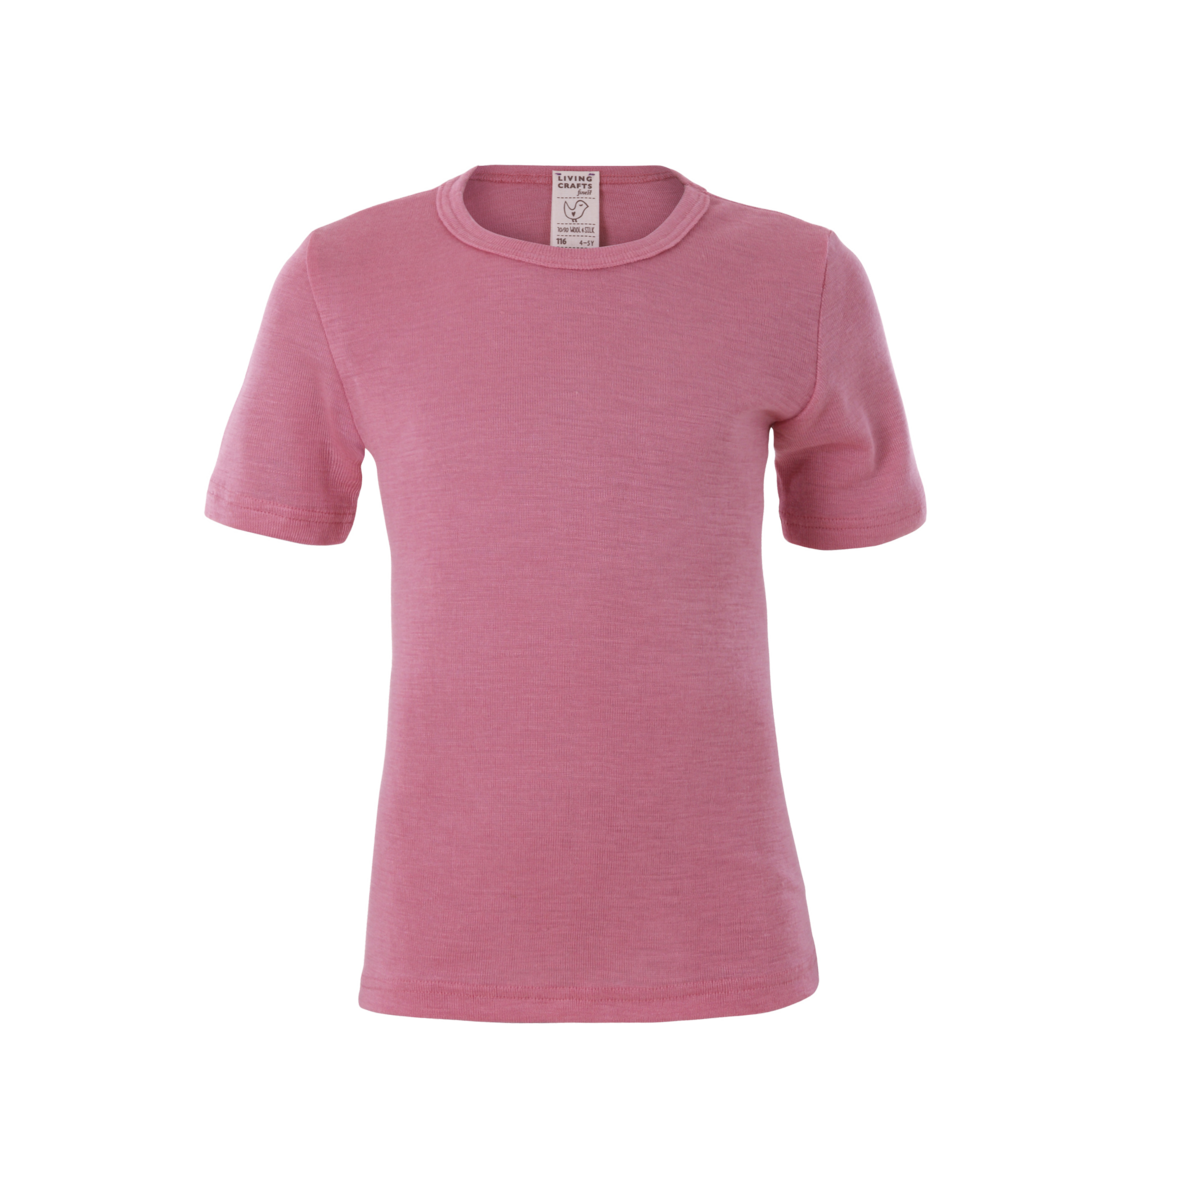 Pinke Kurzarm-Shirt, 